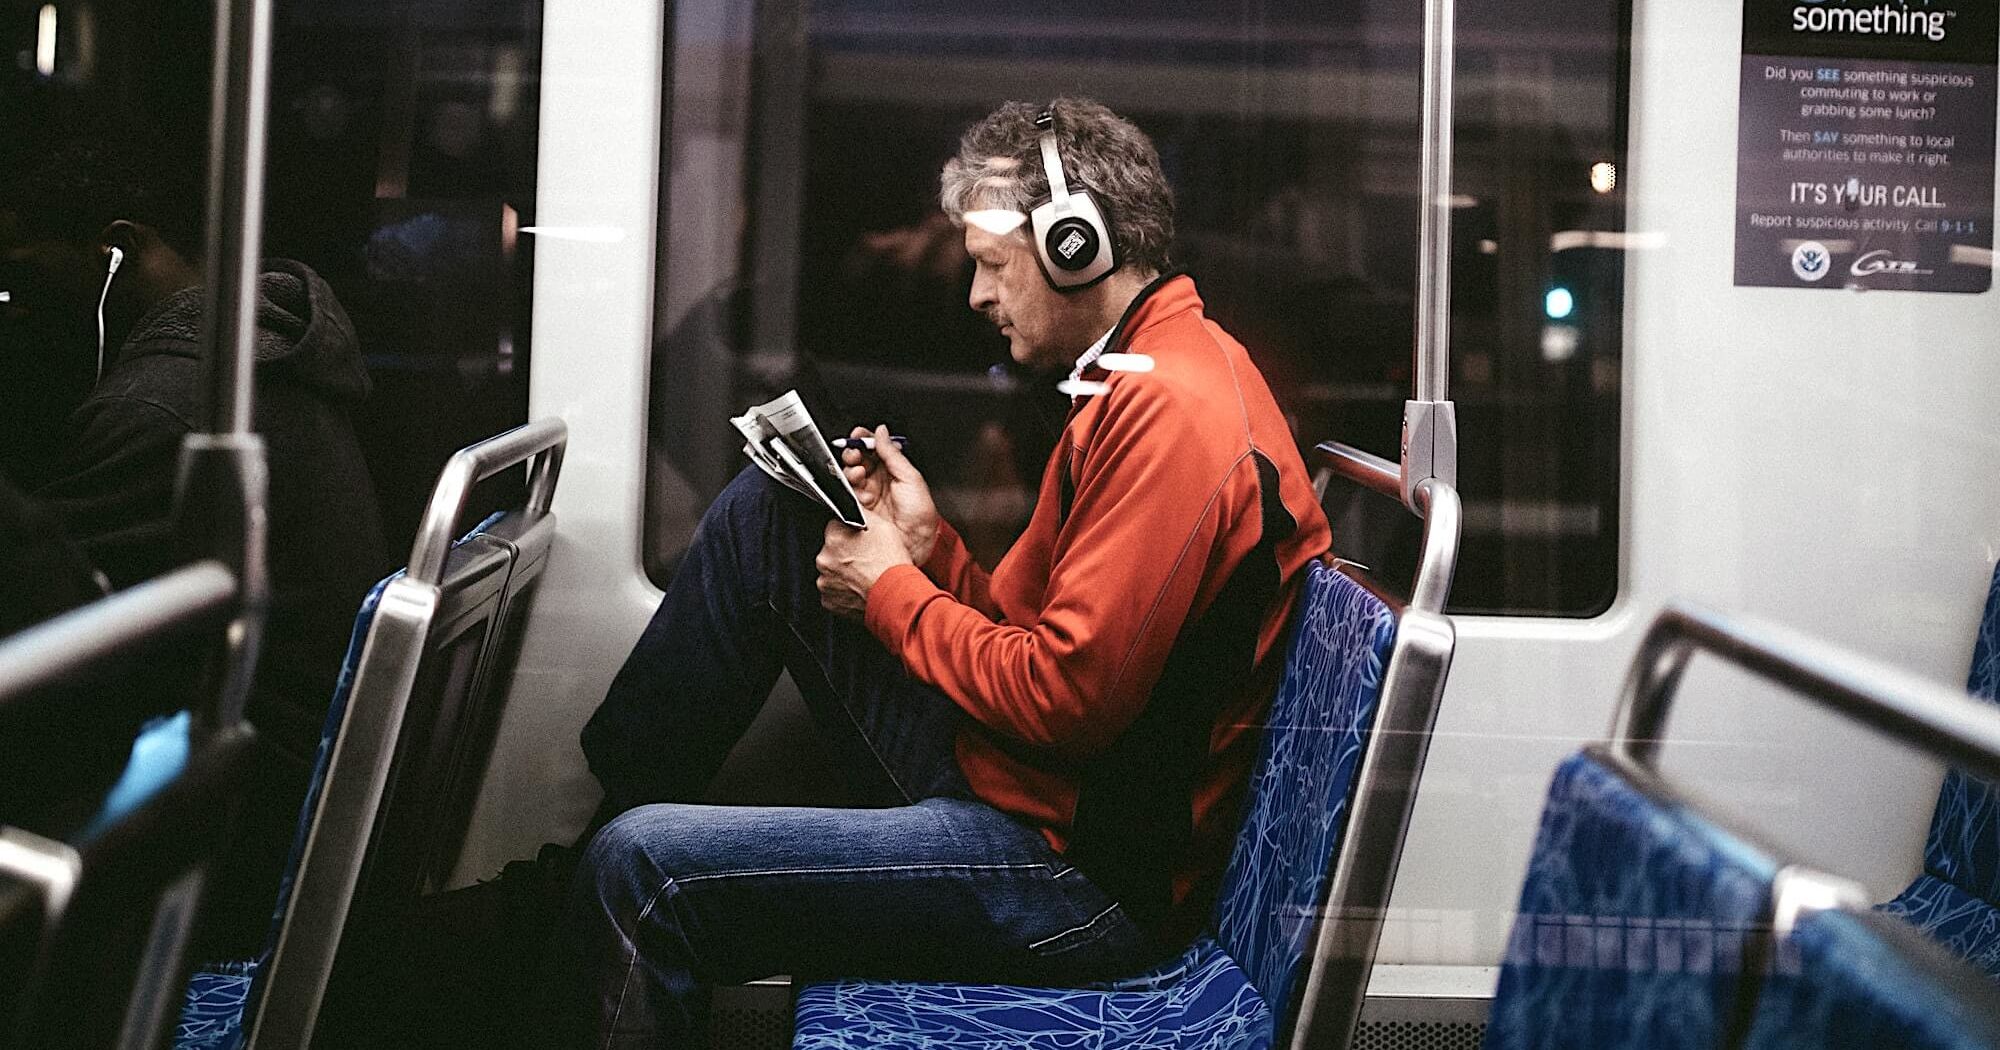 Мужчина в наушниках, едущий в общественном транспорте, читает газету